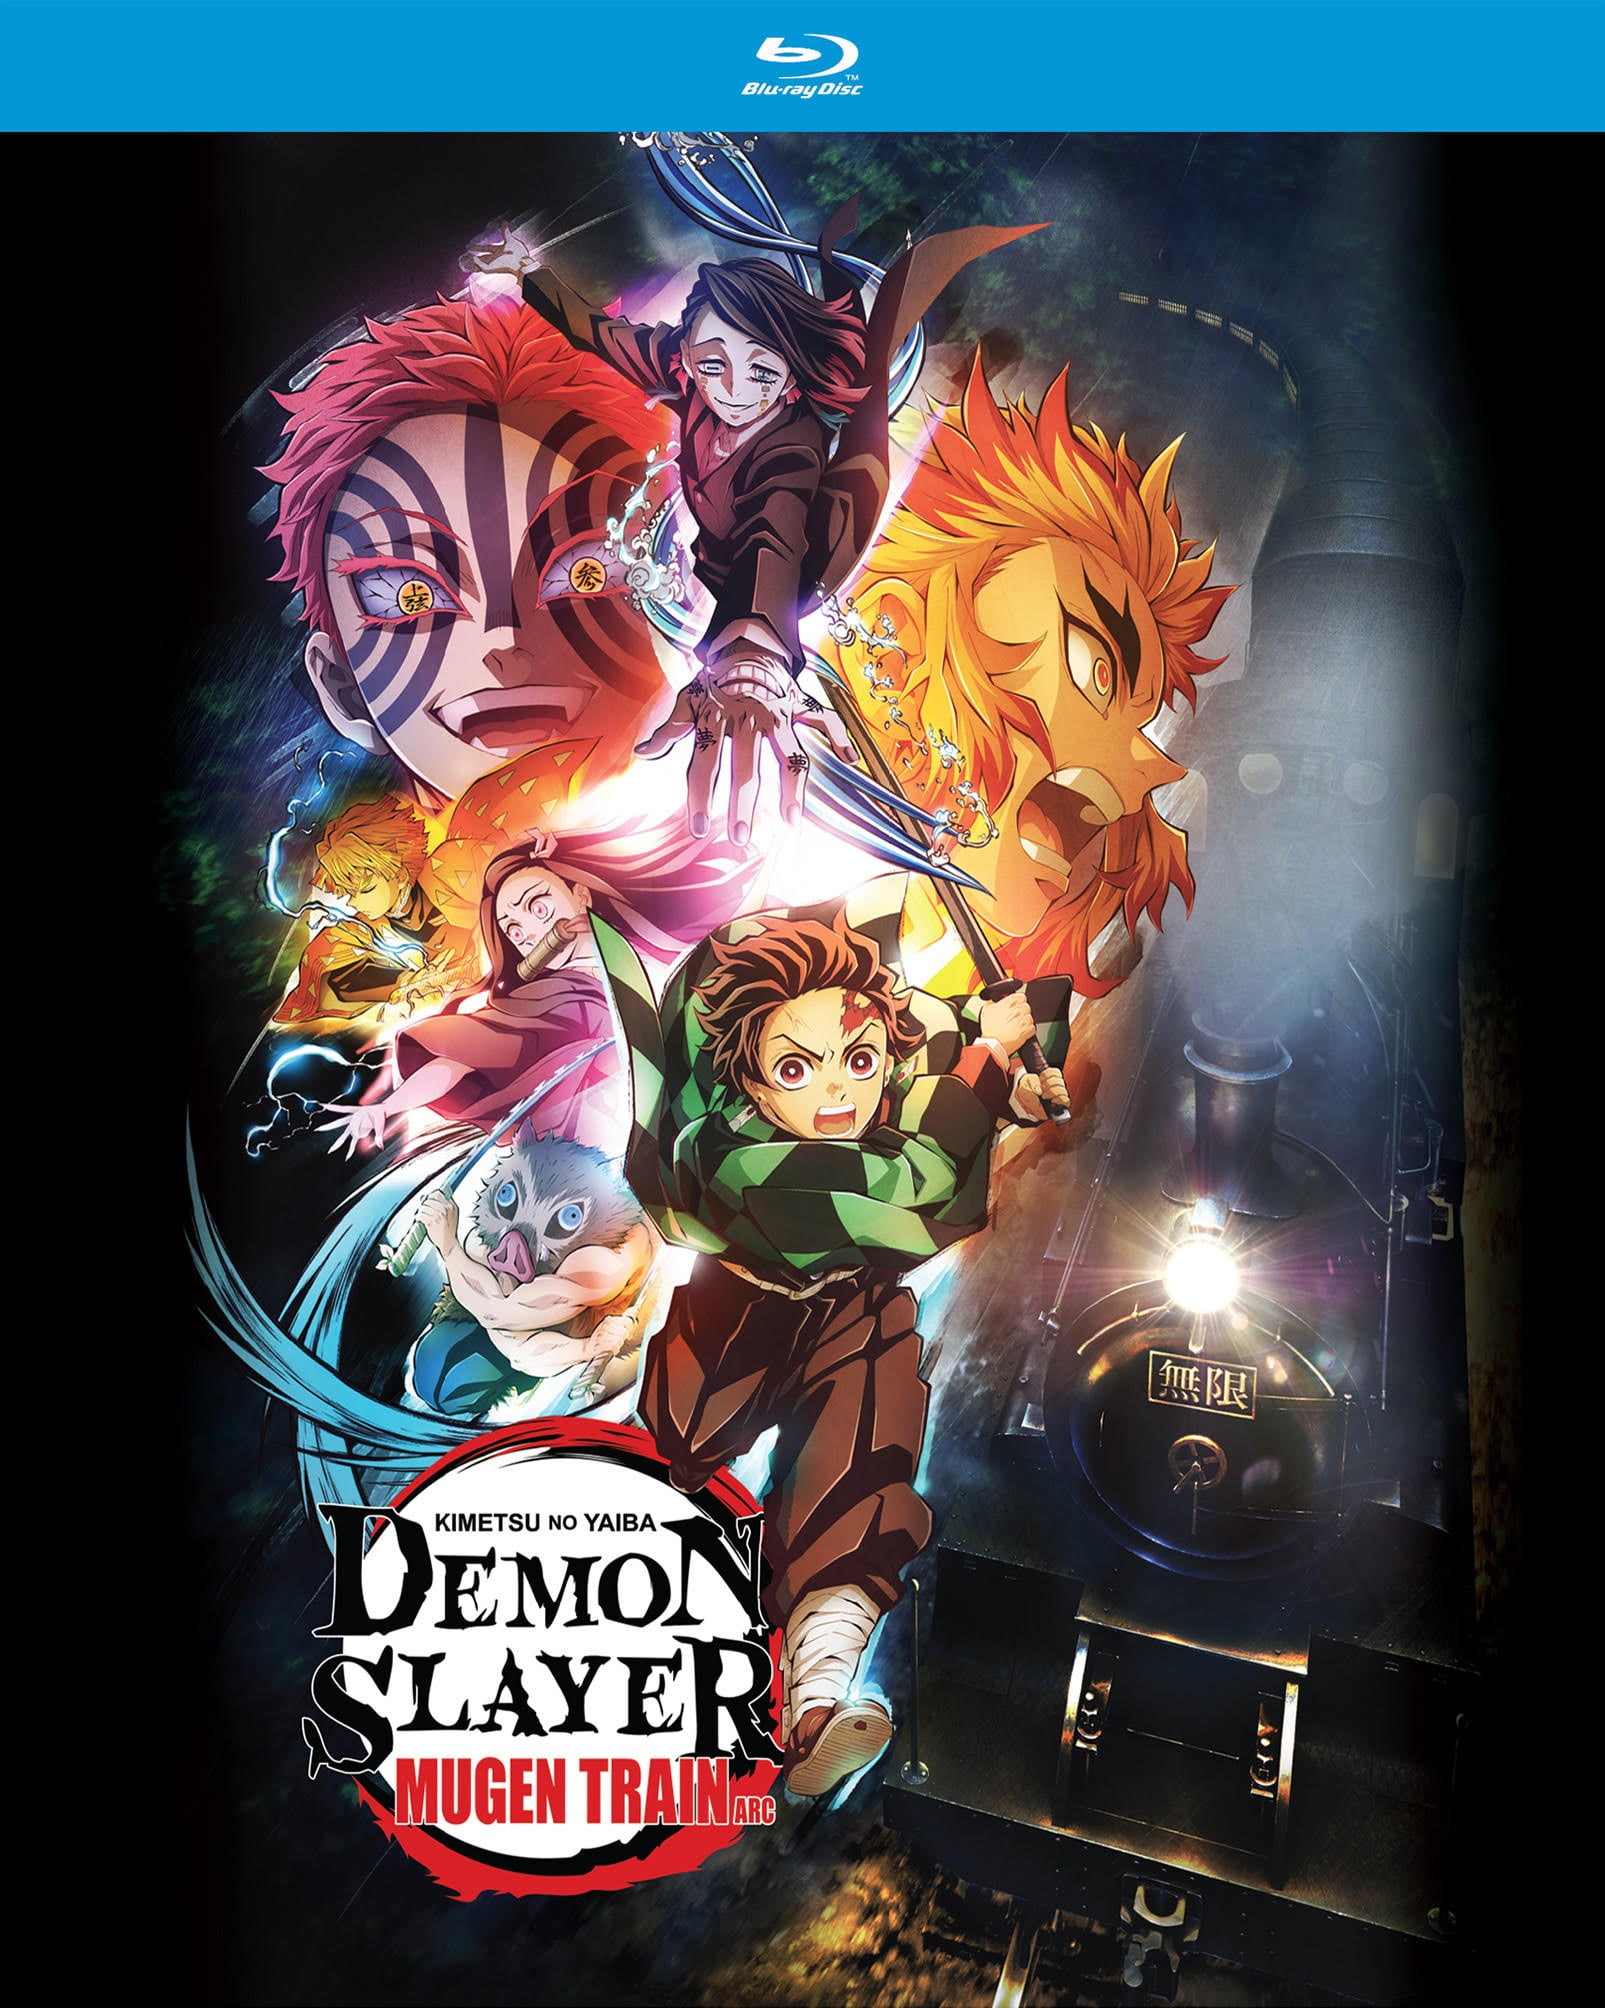 Demon Slayer (Kimetsu no Yaiba): Mugen Train Arc [Blu-ray]